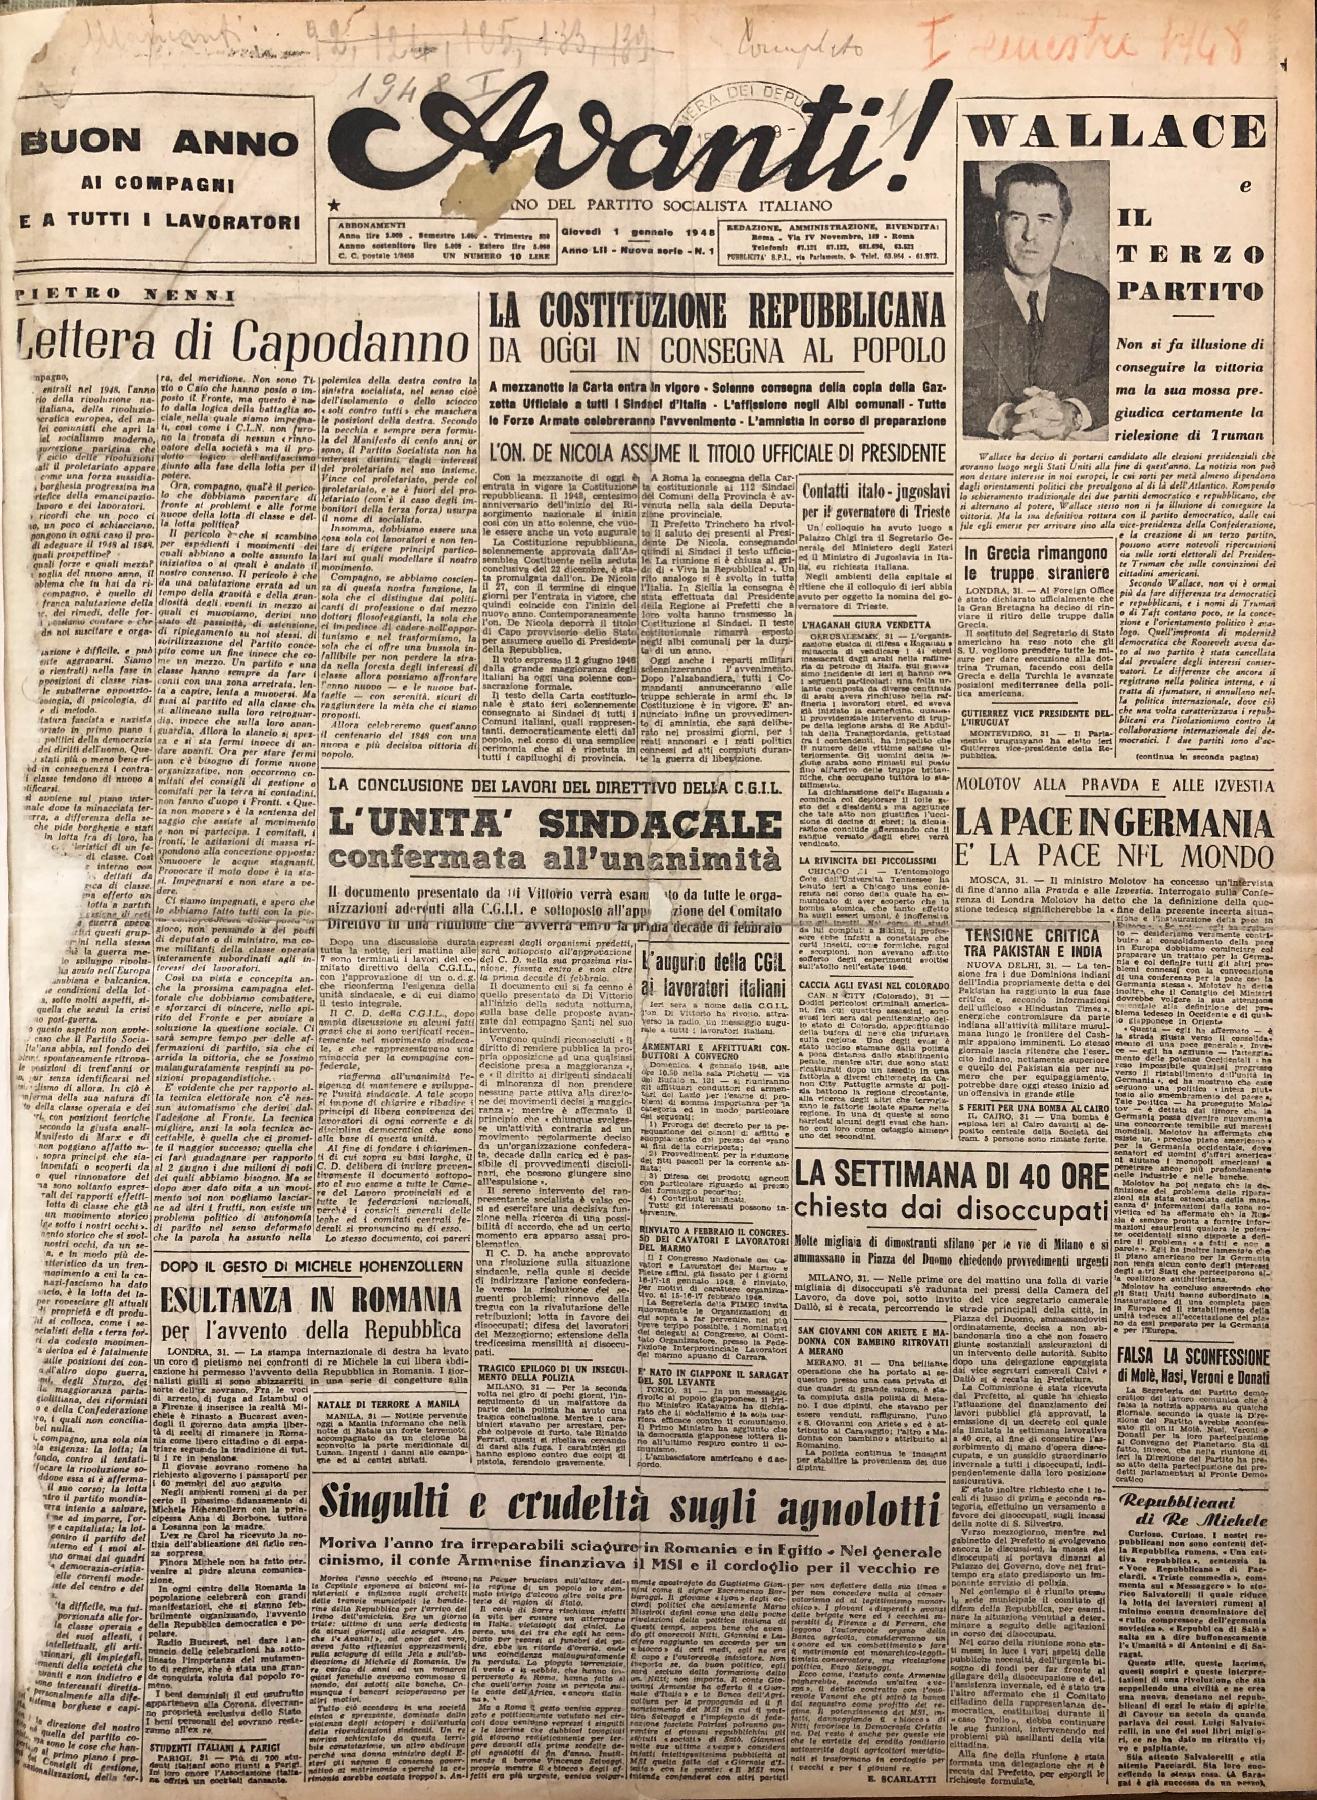 1° gennaio 1948 - Prima pagina del quotidiano "Avanti!"